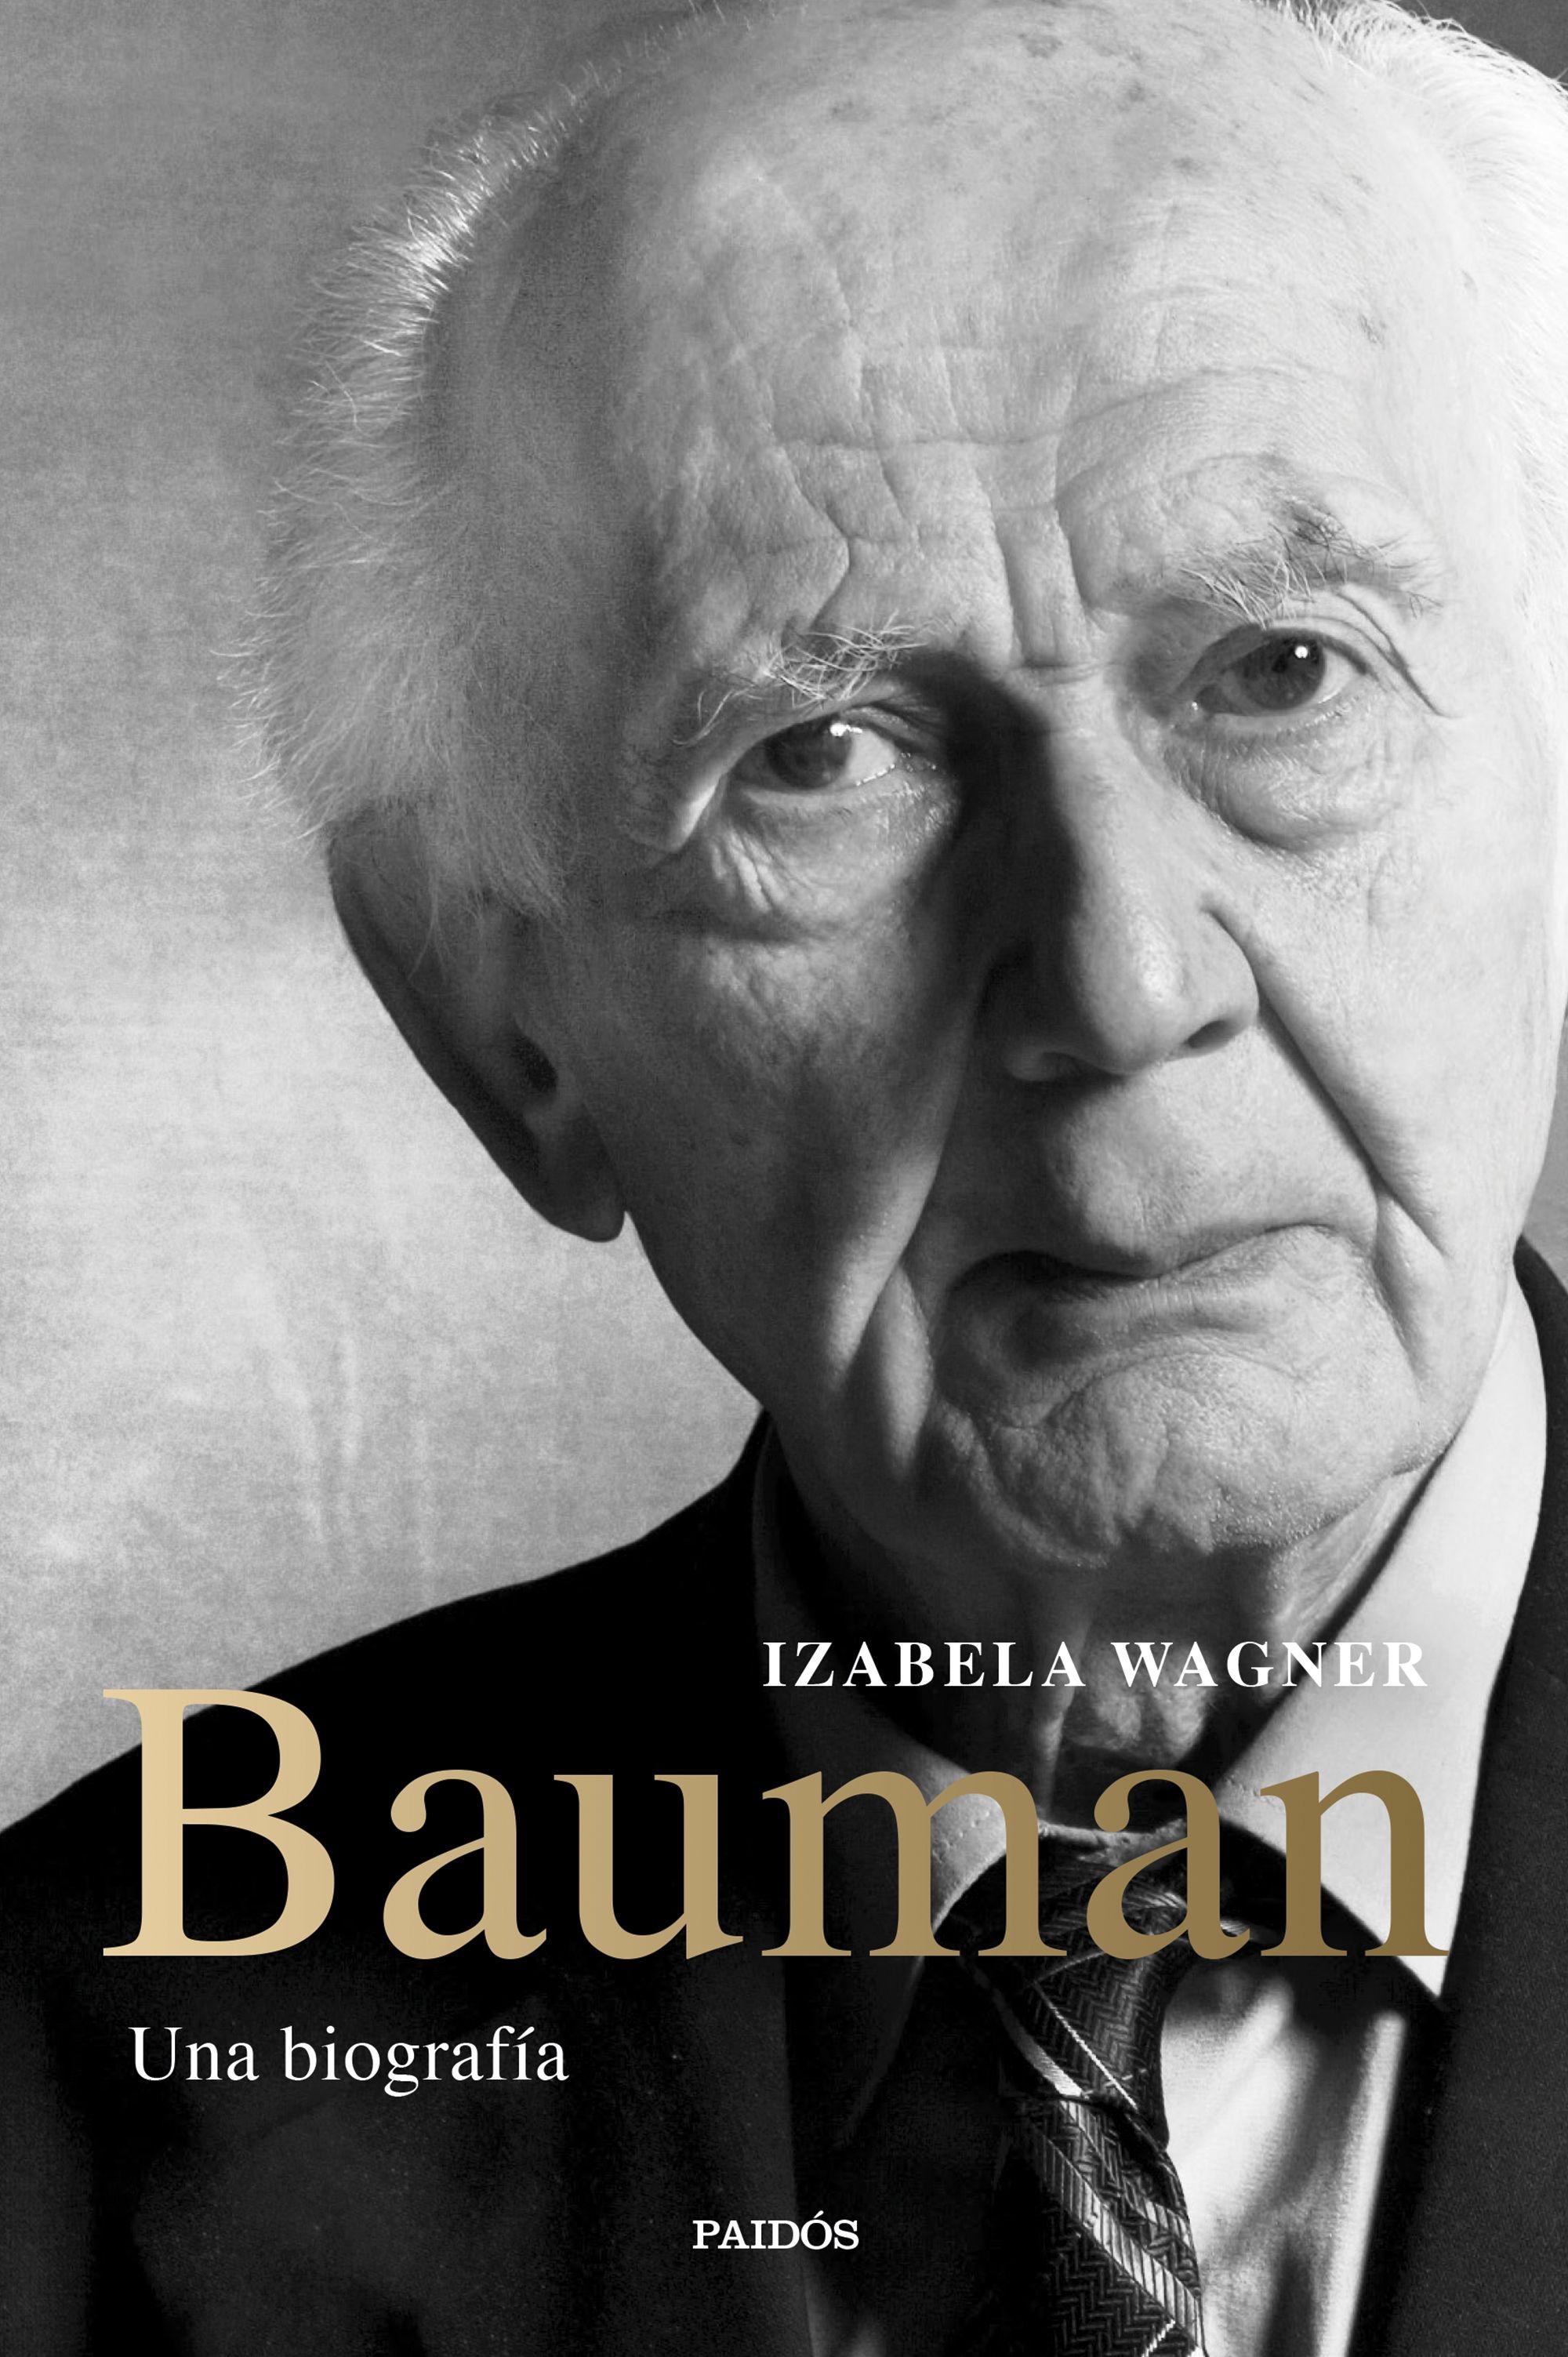 Bauman "Una biografía"